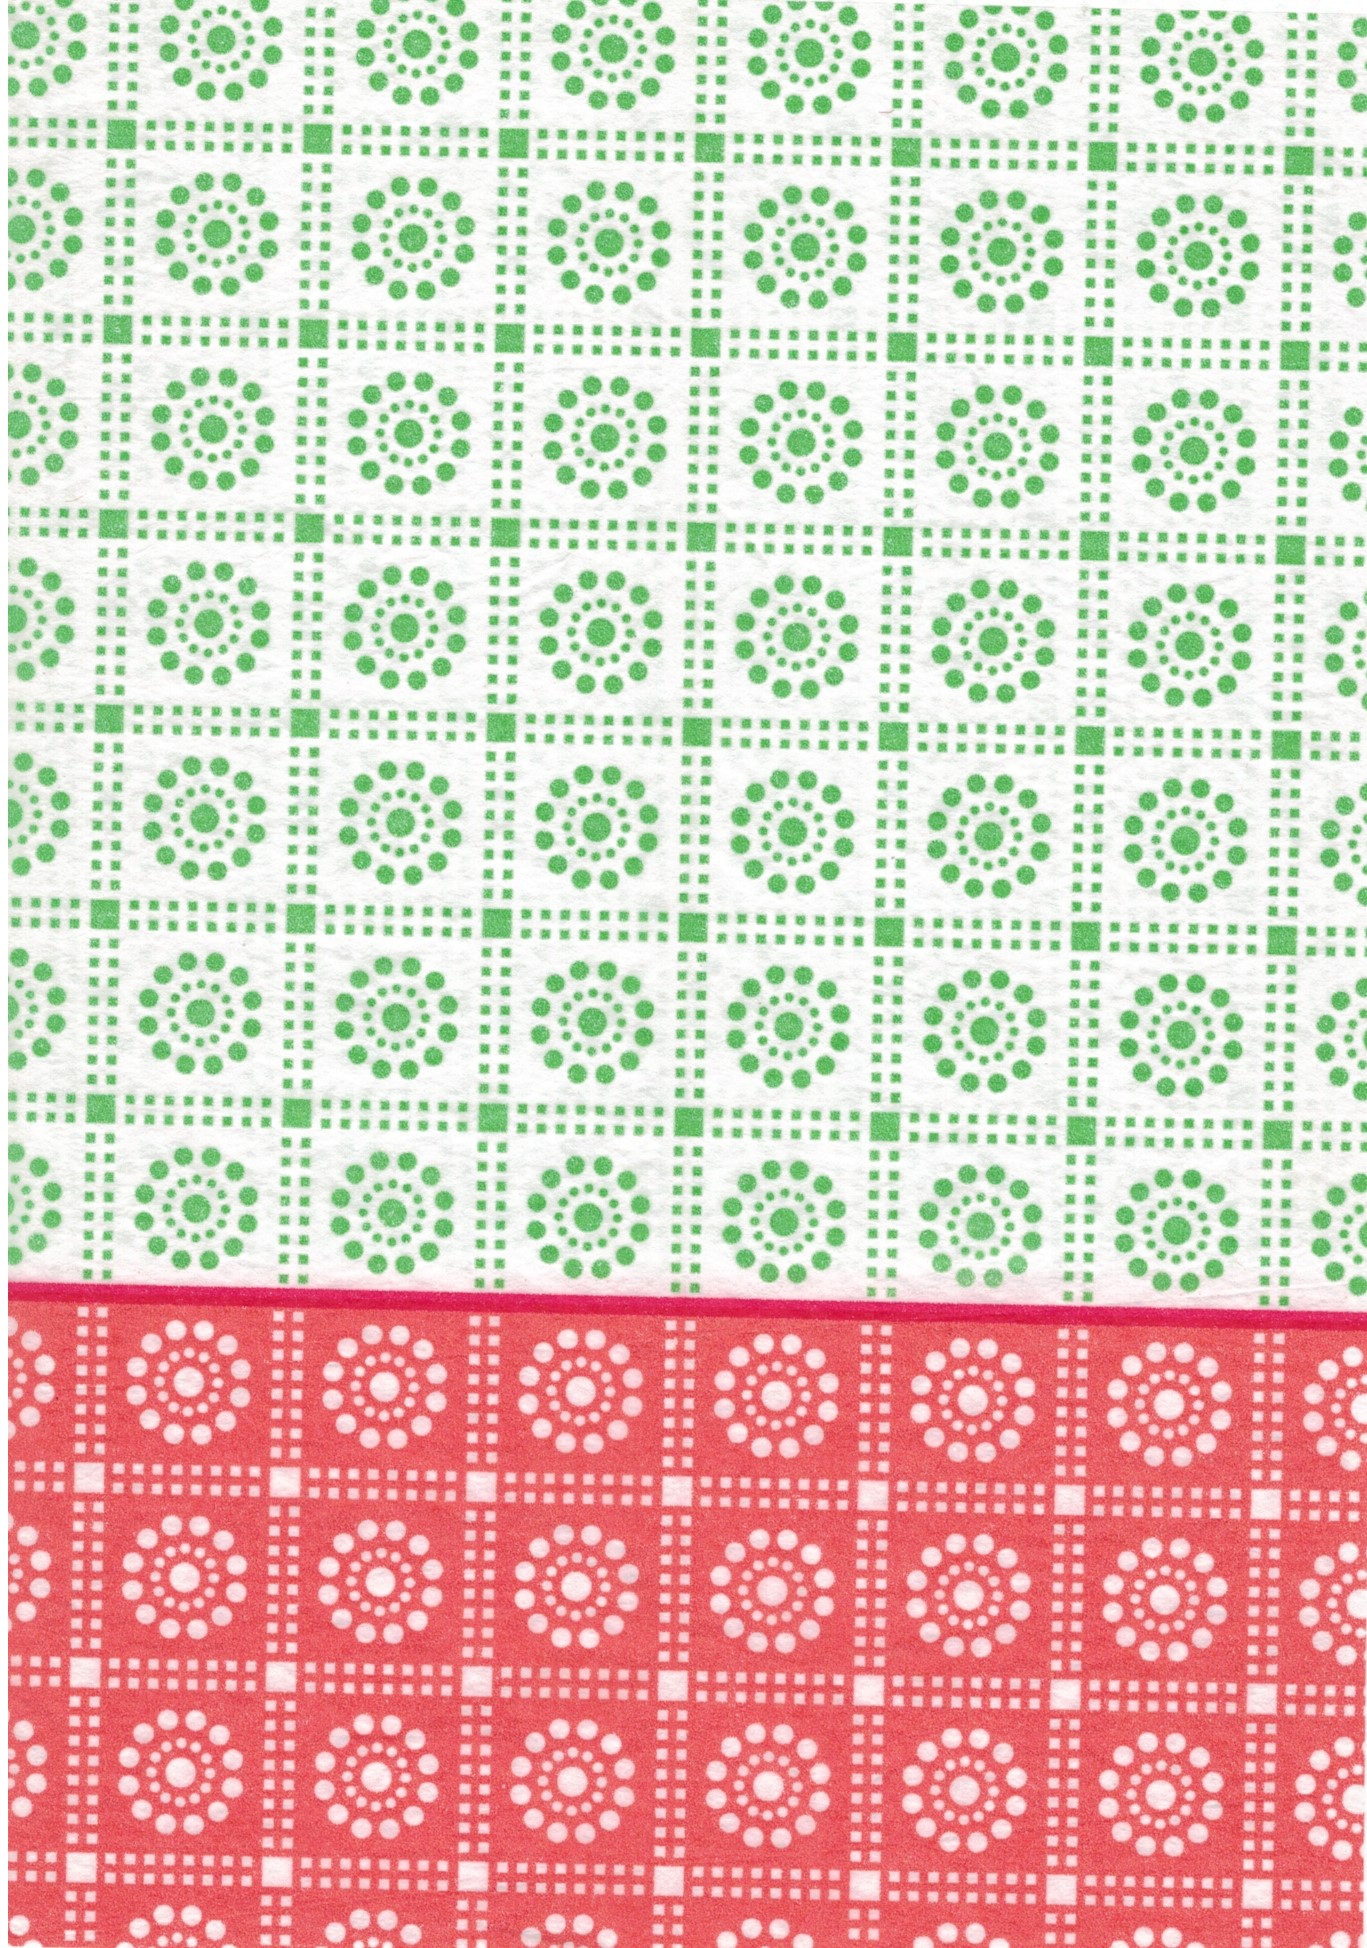 Découpage-Papier, 25x35 cm, 17 g,  grün-weiß-orange Punkte, 1 Blatt